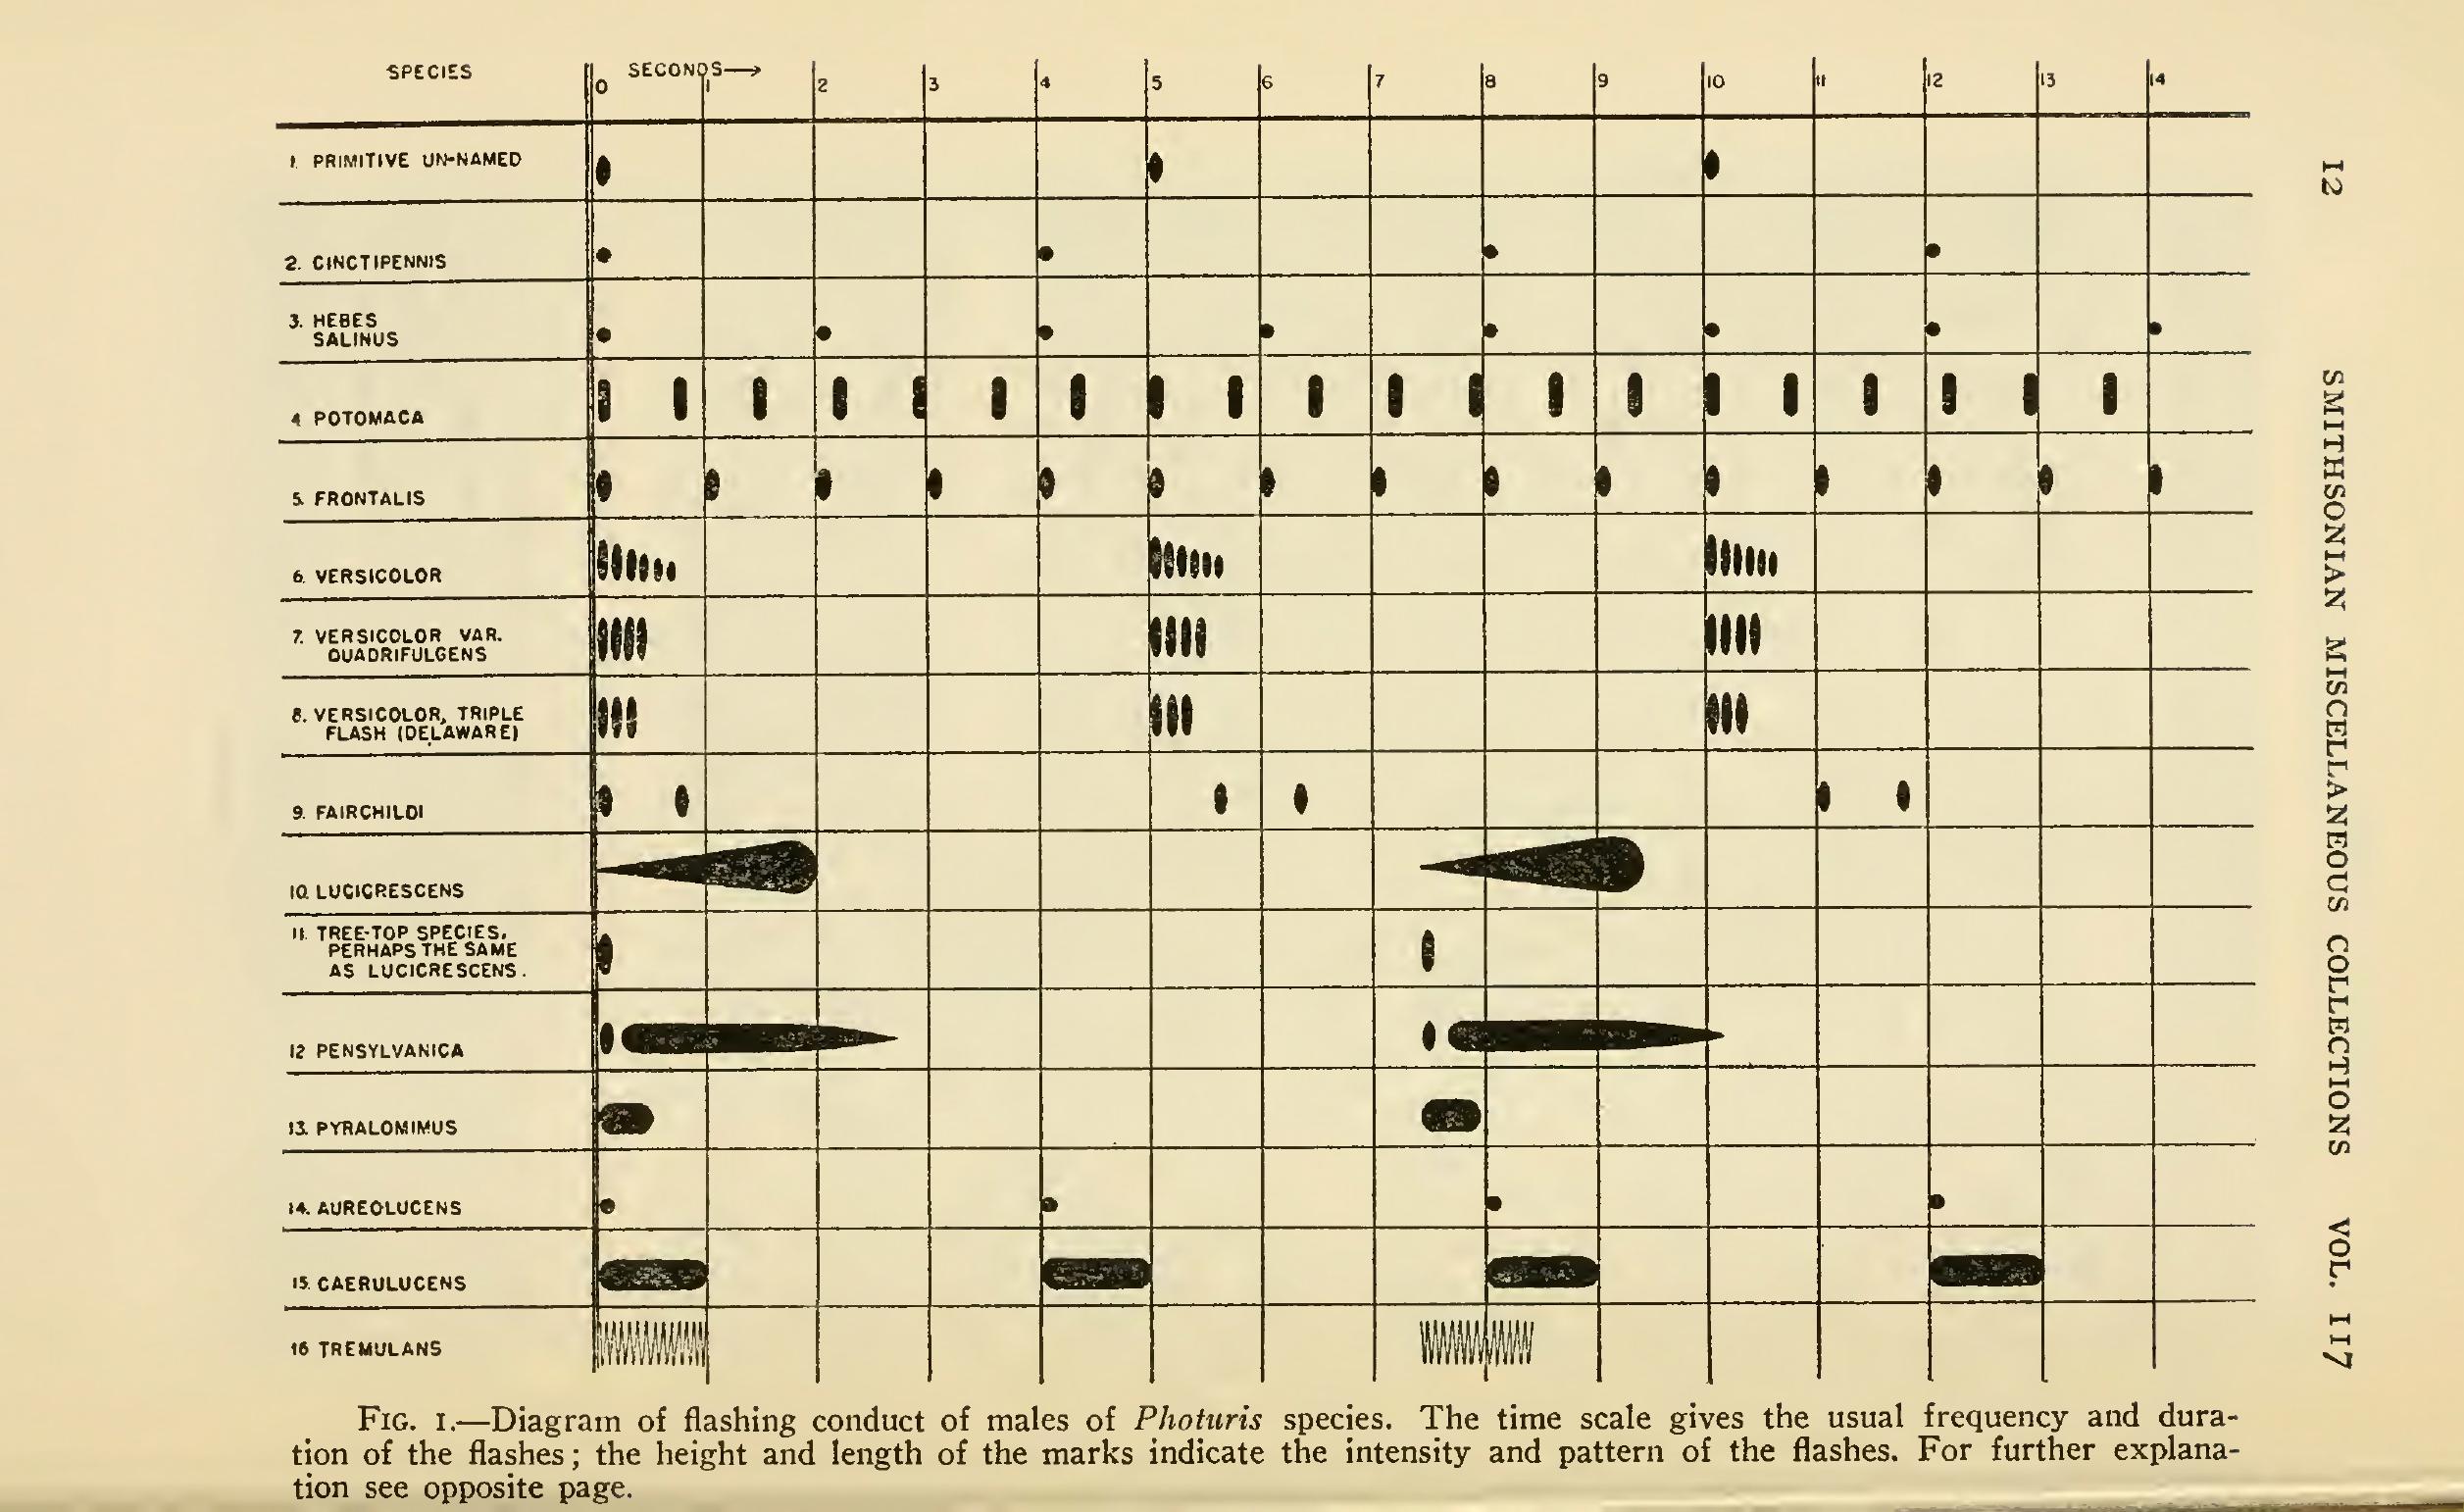 Tableau de 16 lignes, une ligne par espèce, avec un dessin des motifs de clignotement de chaque espèce